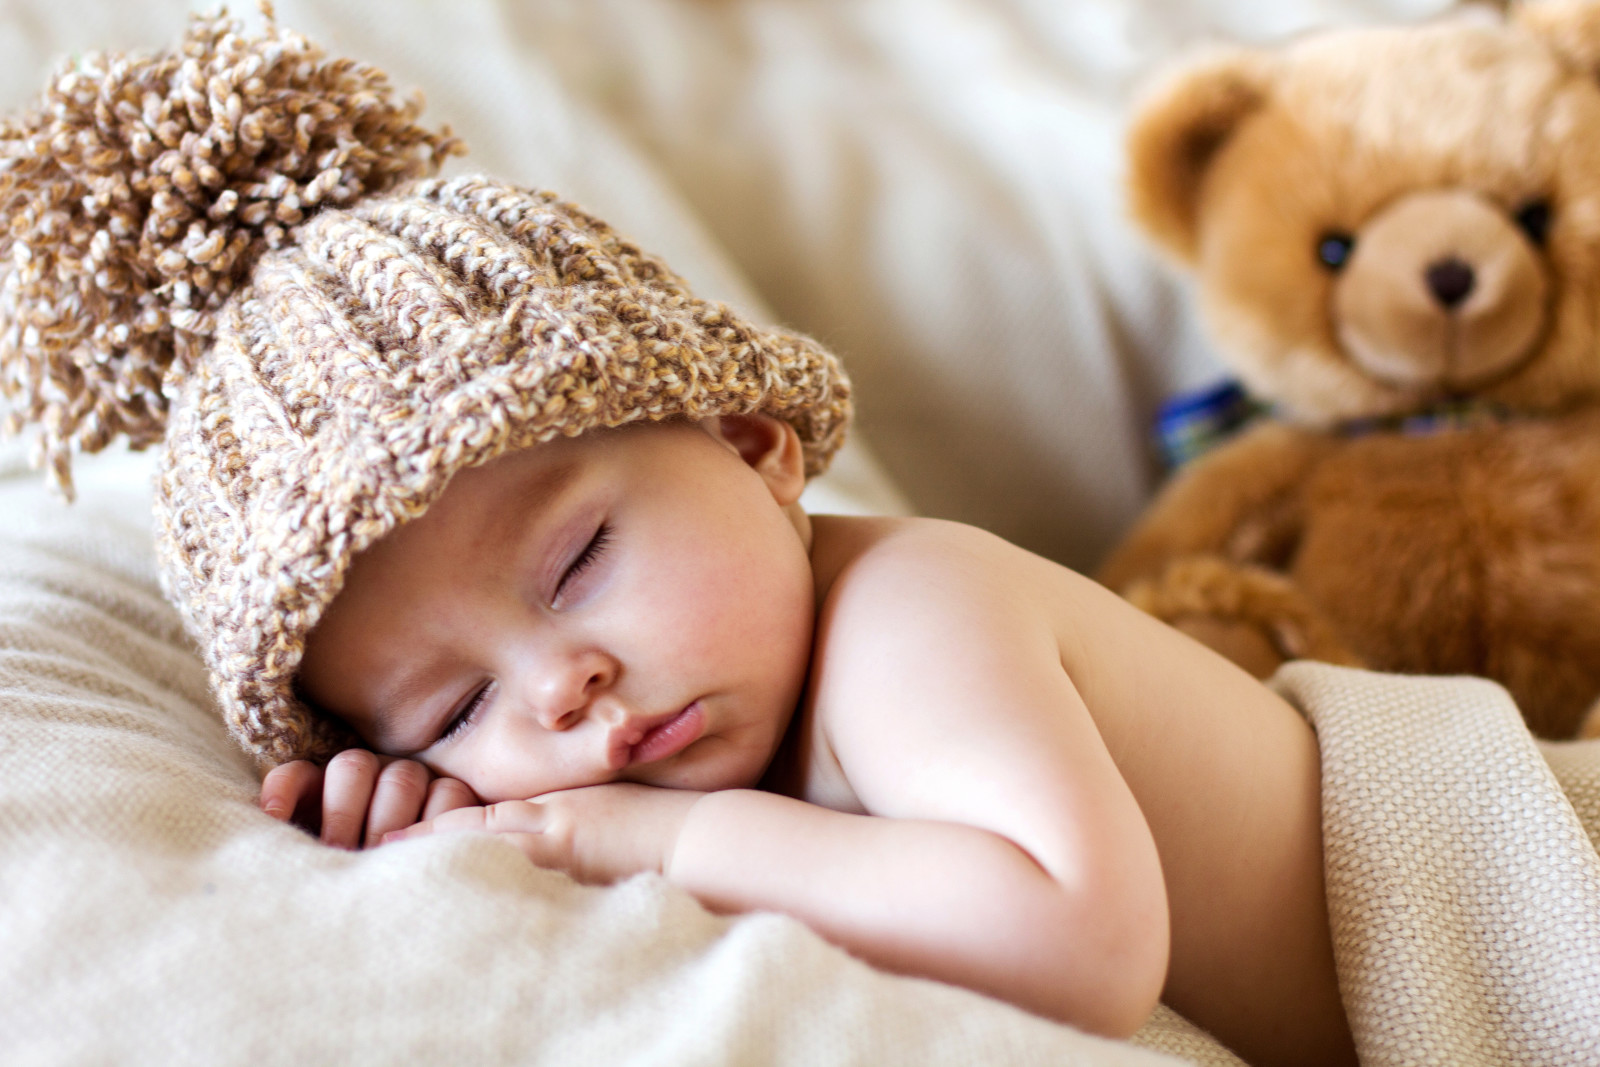 đứa bé, chịu, mũ, dễ thương, đứa trẻ, đồ chơi, Teddy, ngủ